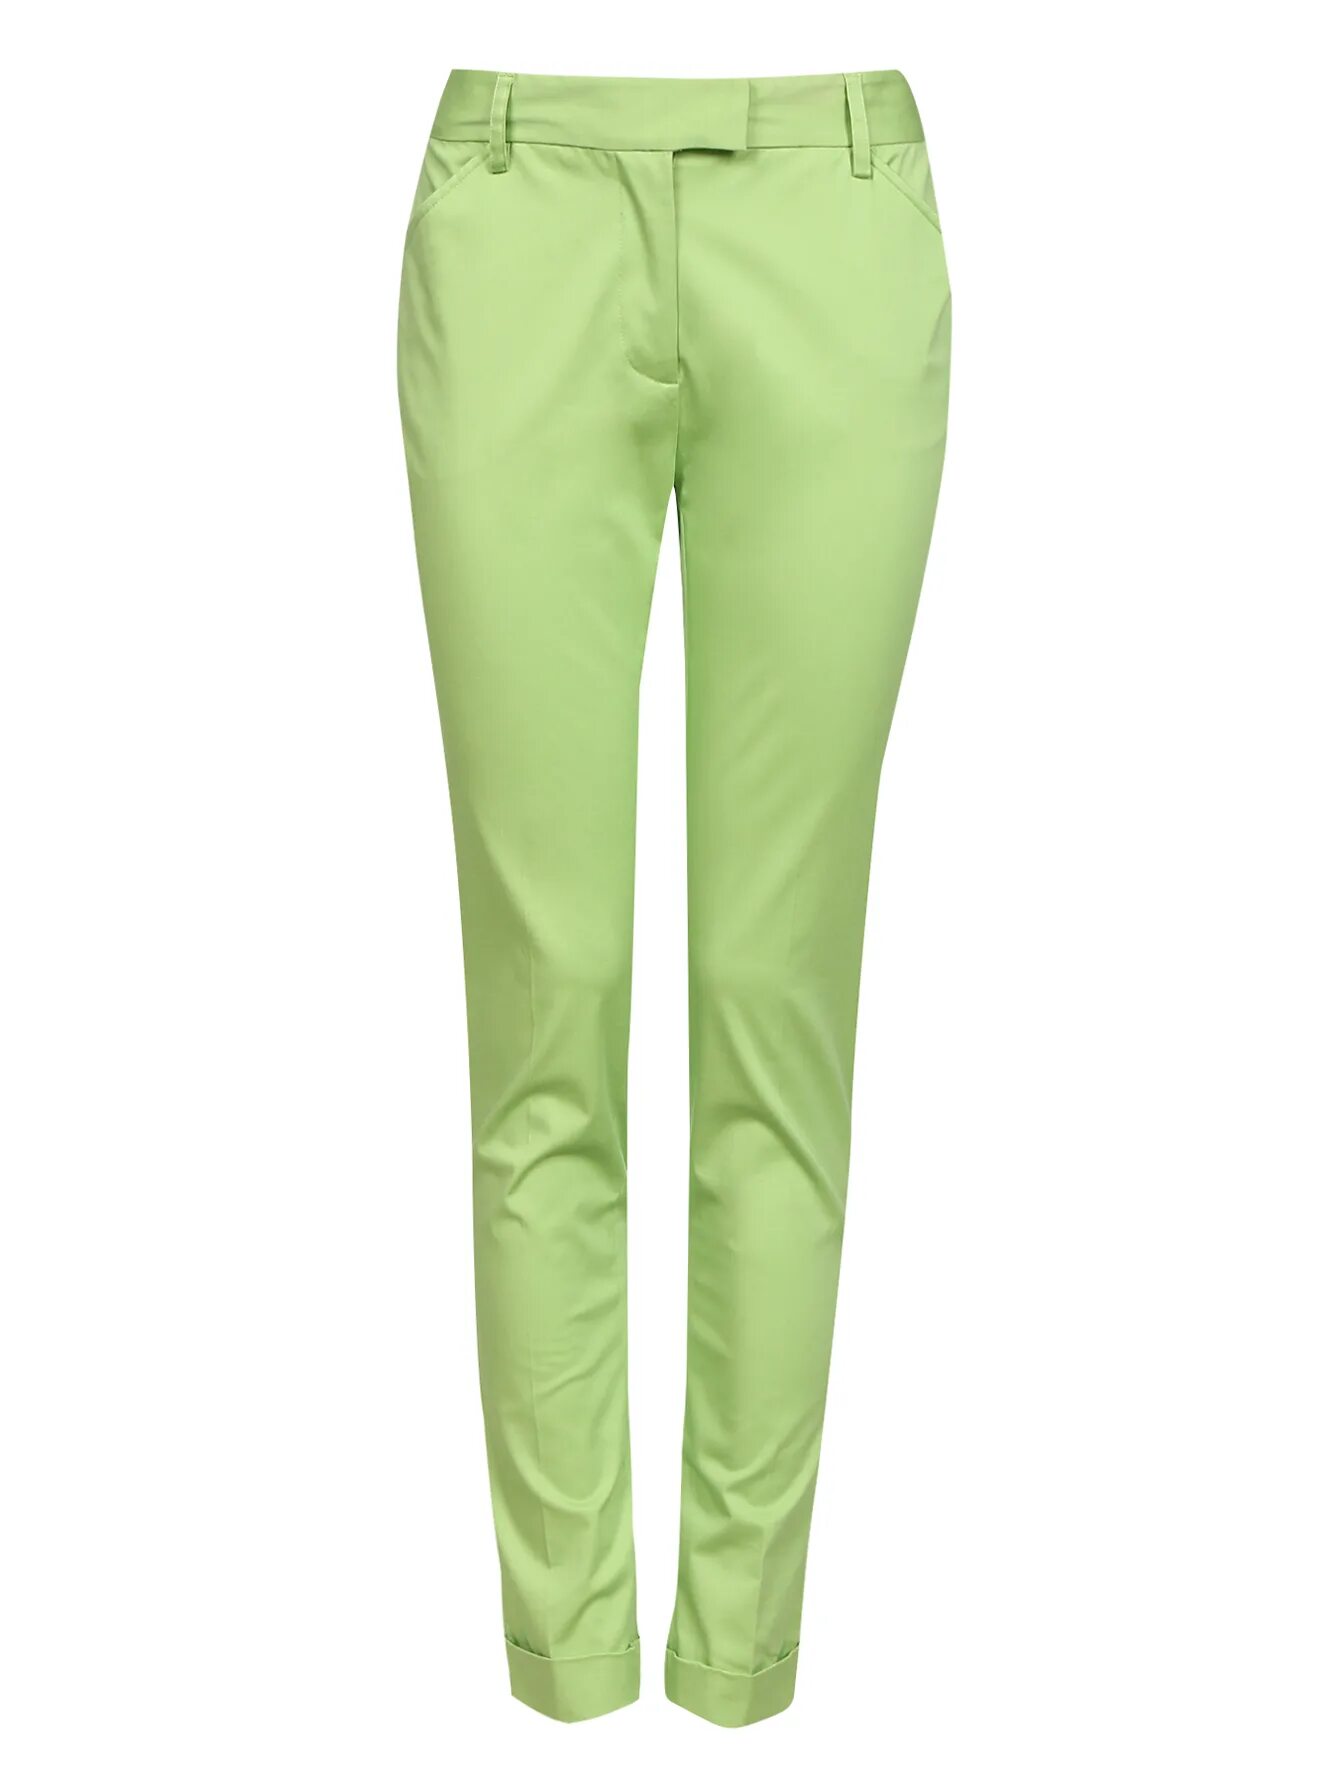 Купить зеленые штаны. Carrera Green брюки женские. Зелёные брюки женские. Салатовые брюки женские. Зелёные штаны женские.